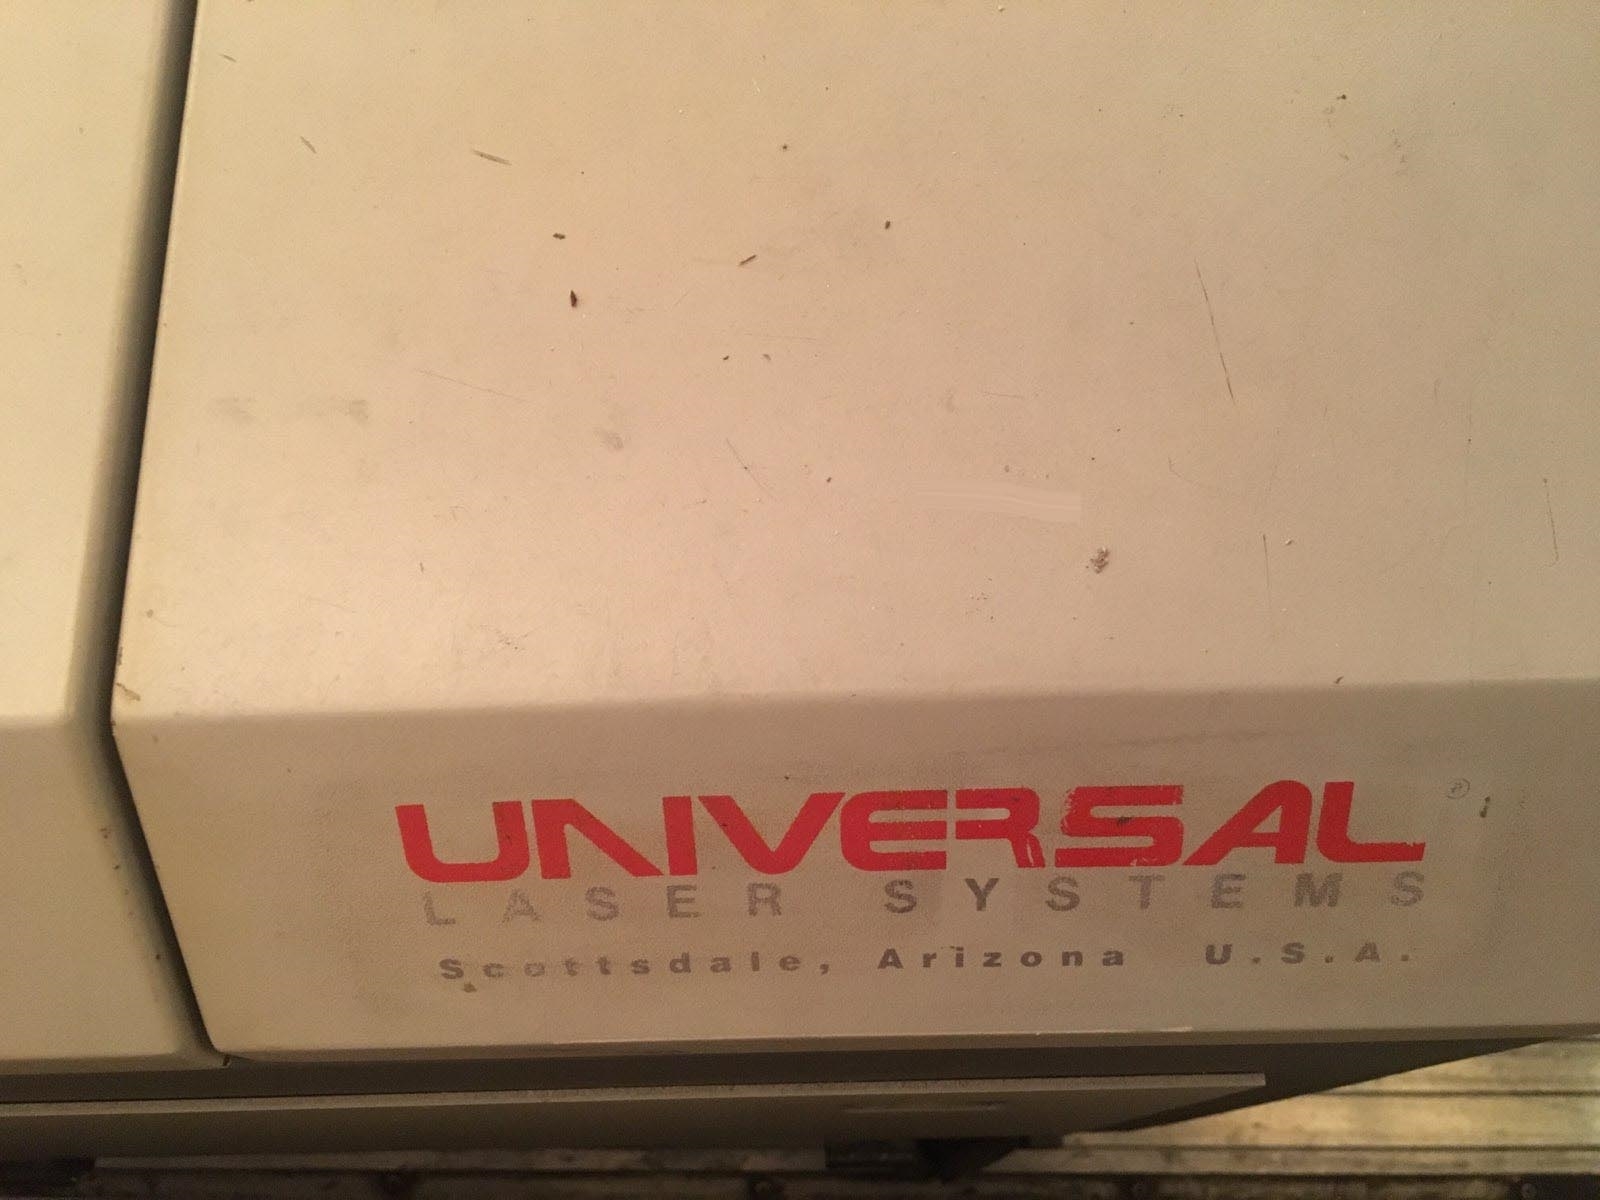 圖為 已使用的 UNIVERSAL LASER SYSTEMS / ULS ULS50PS 待售